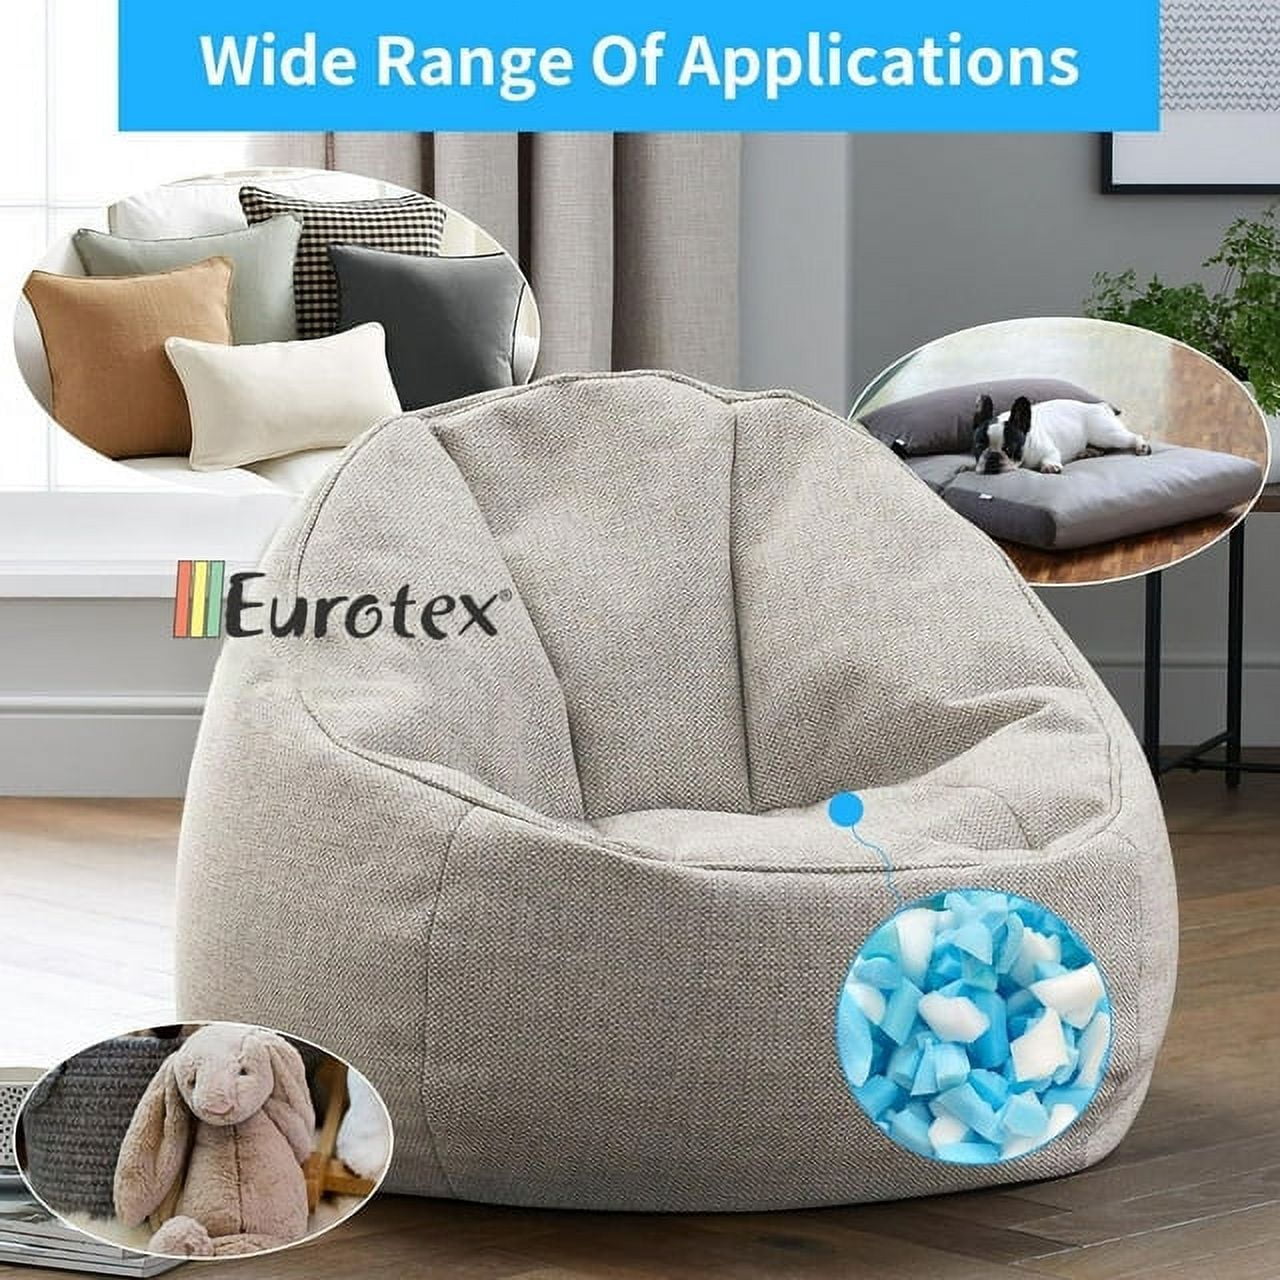 Eurotex Bean Bag Filler w/ Shredded Memory Foam Filling - Pillow Stuffing